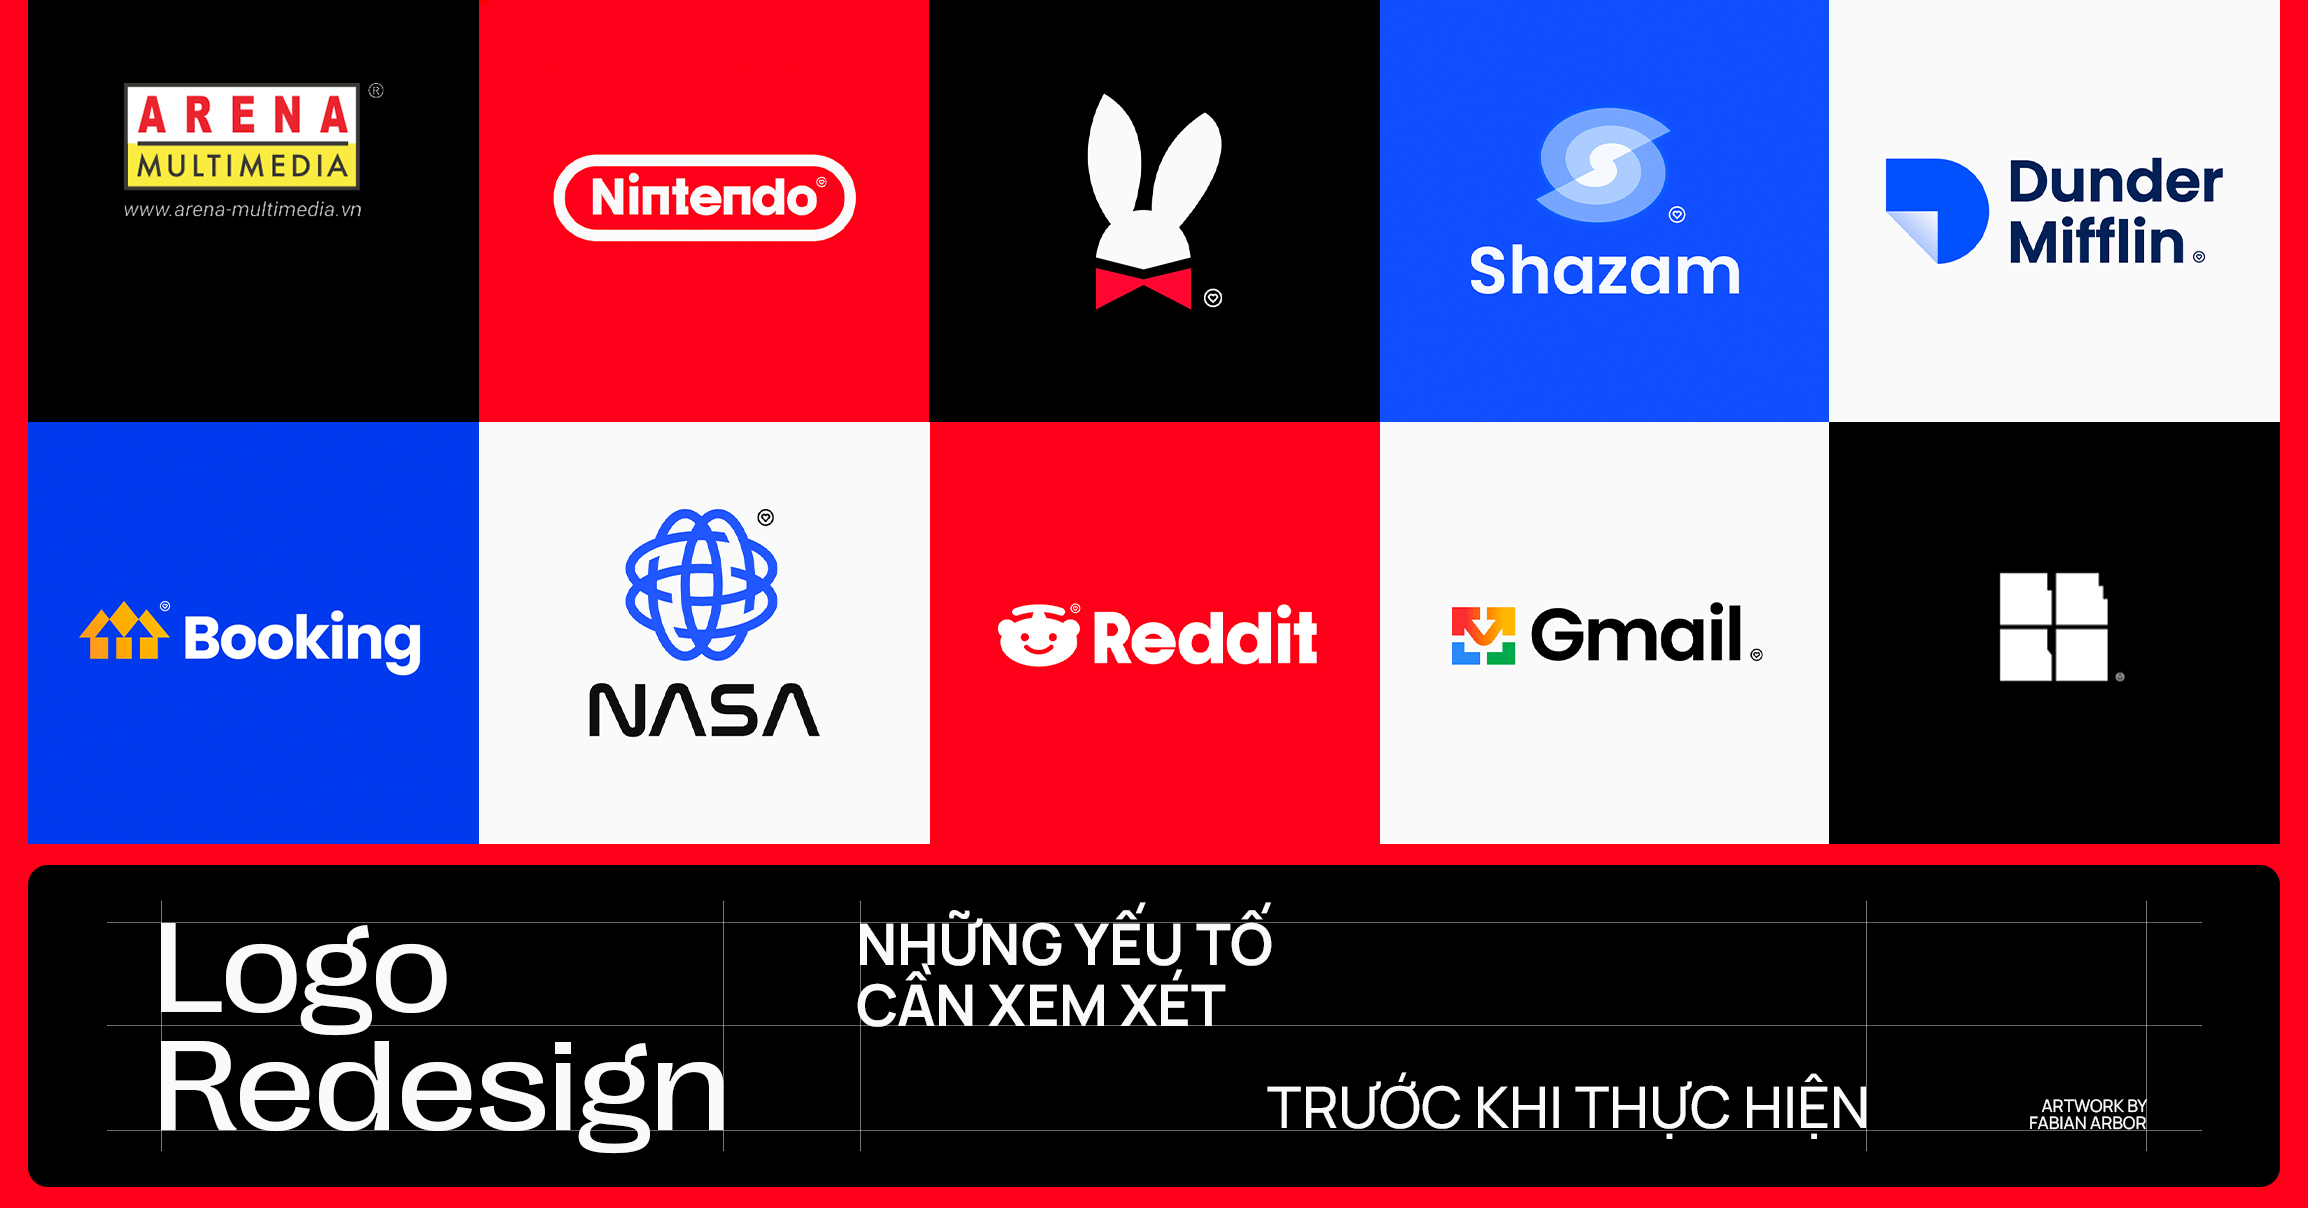 Cách hoàn thiện redesign a logo để đưa doanh nghiệp bạn lên một tầm cao mới